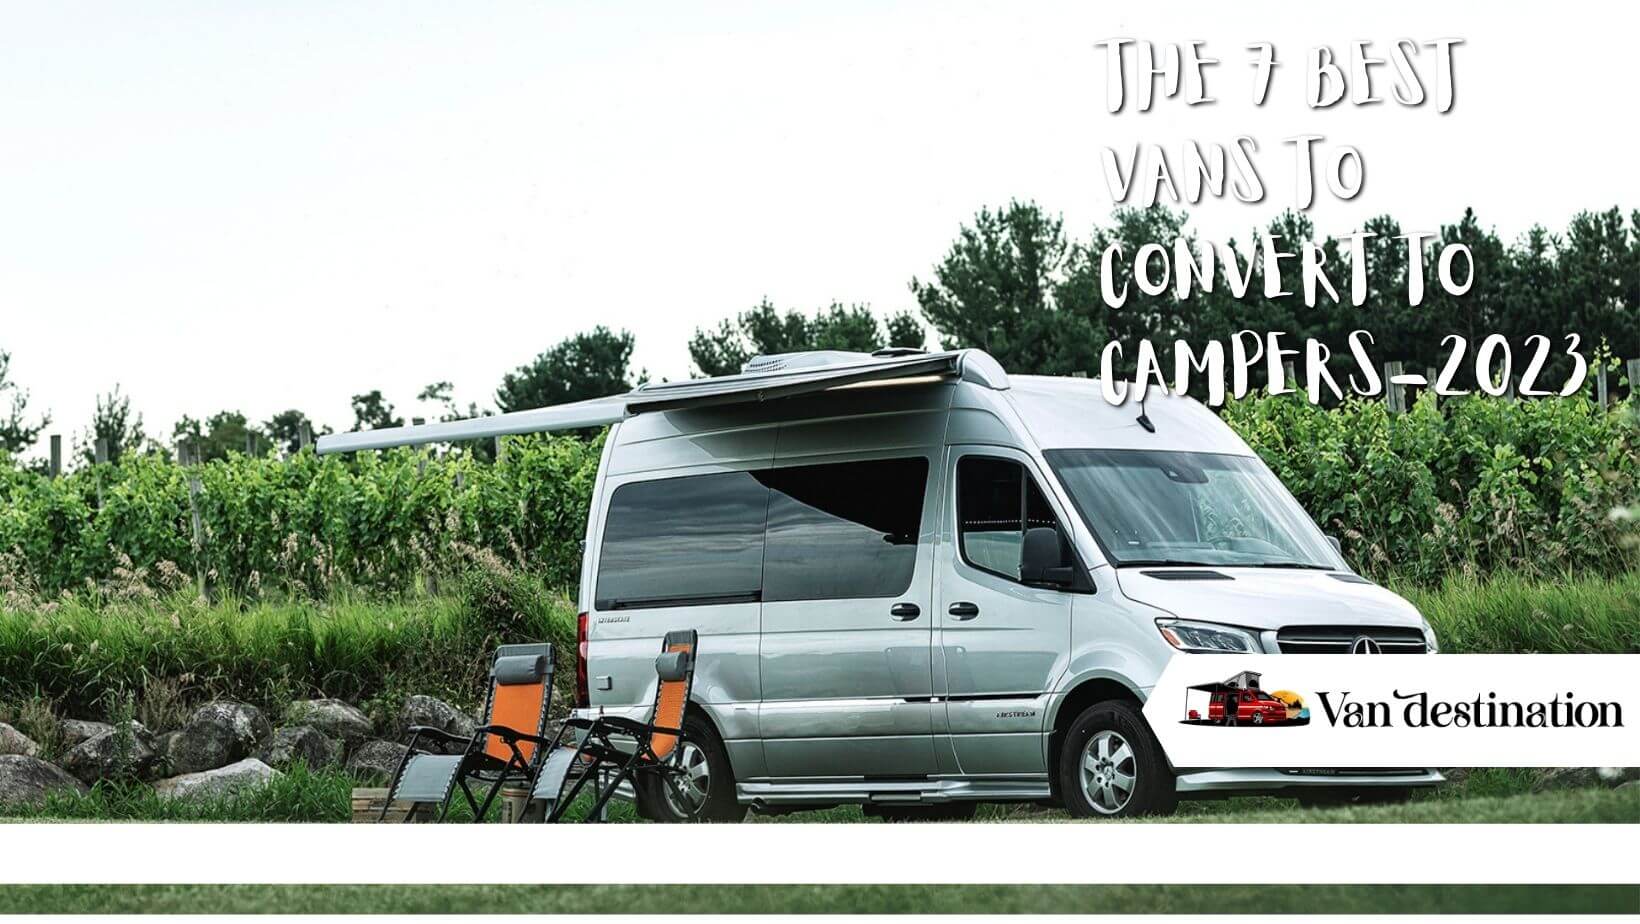 The 7 Best Vans To Convert To Campers of 2023 - Van Destination